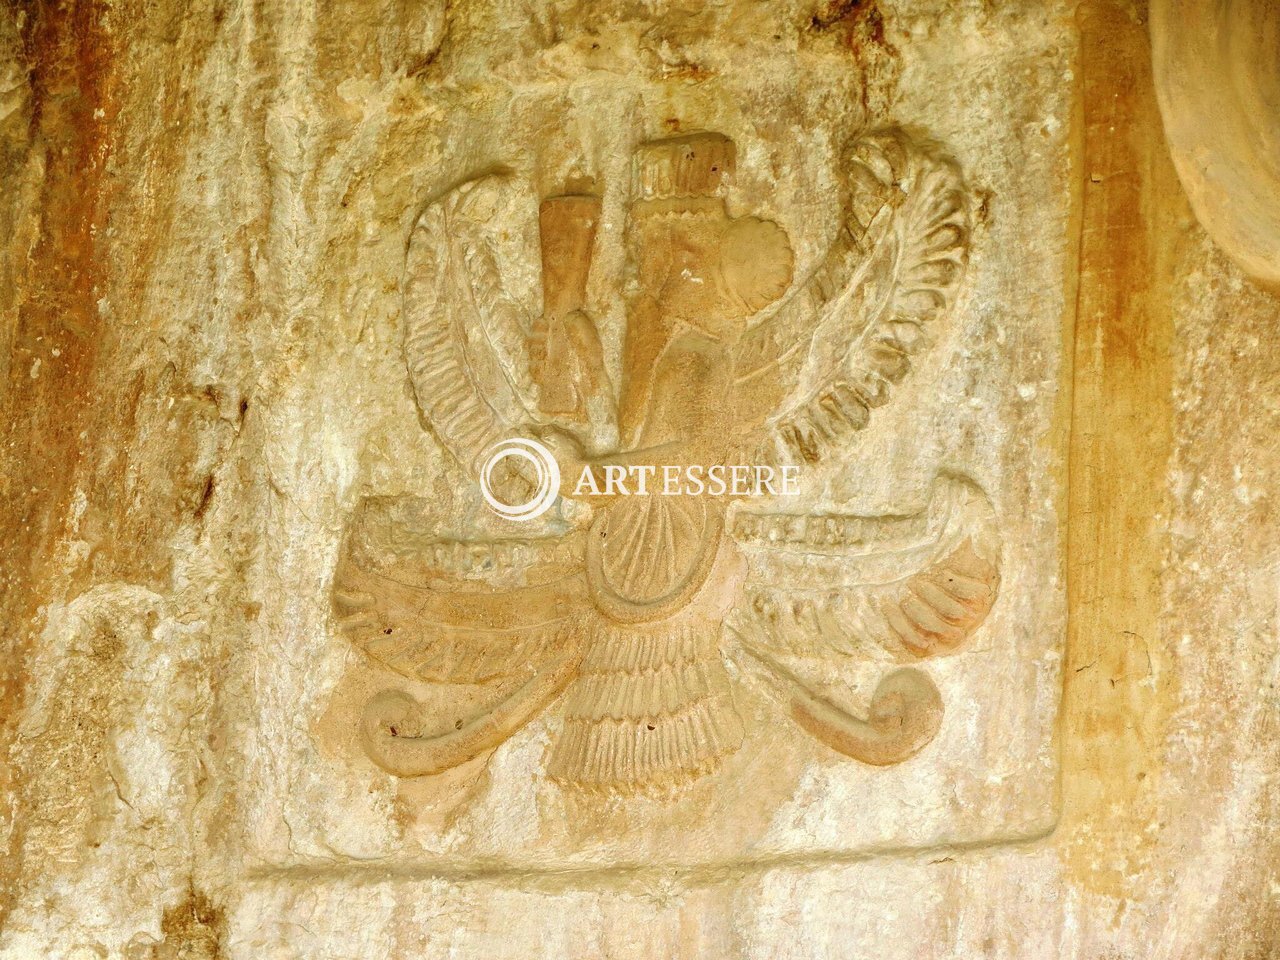 Qyzqapan Tomb